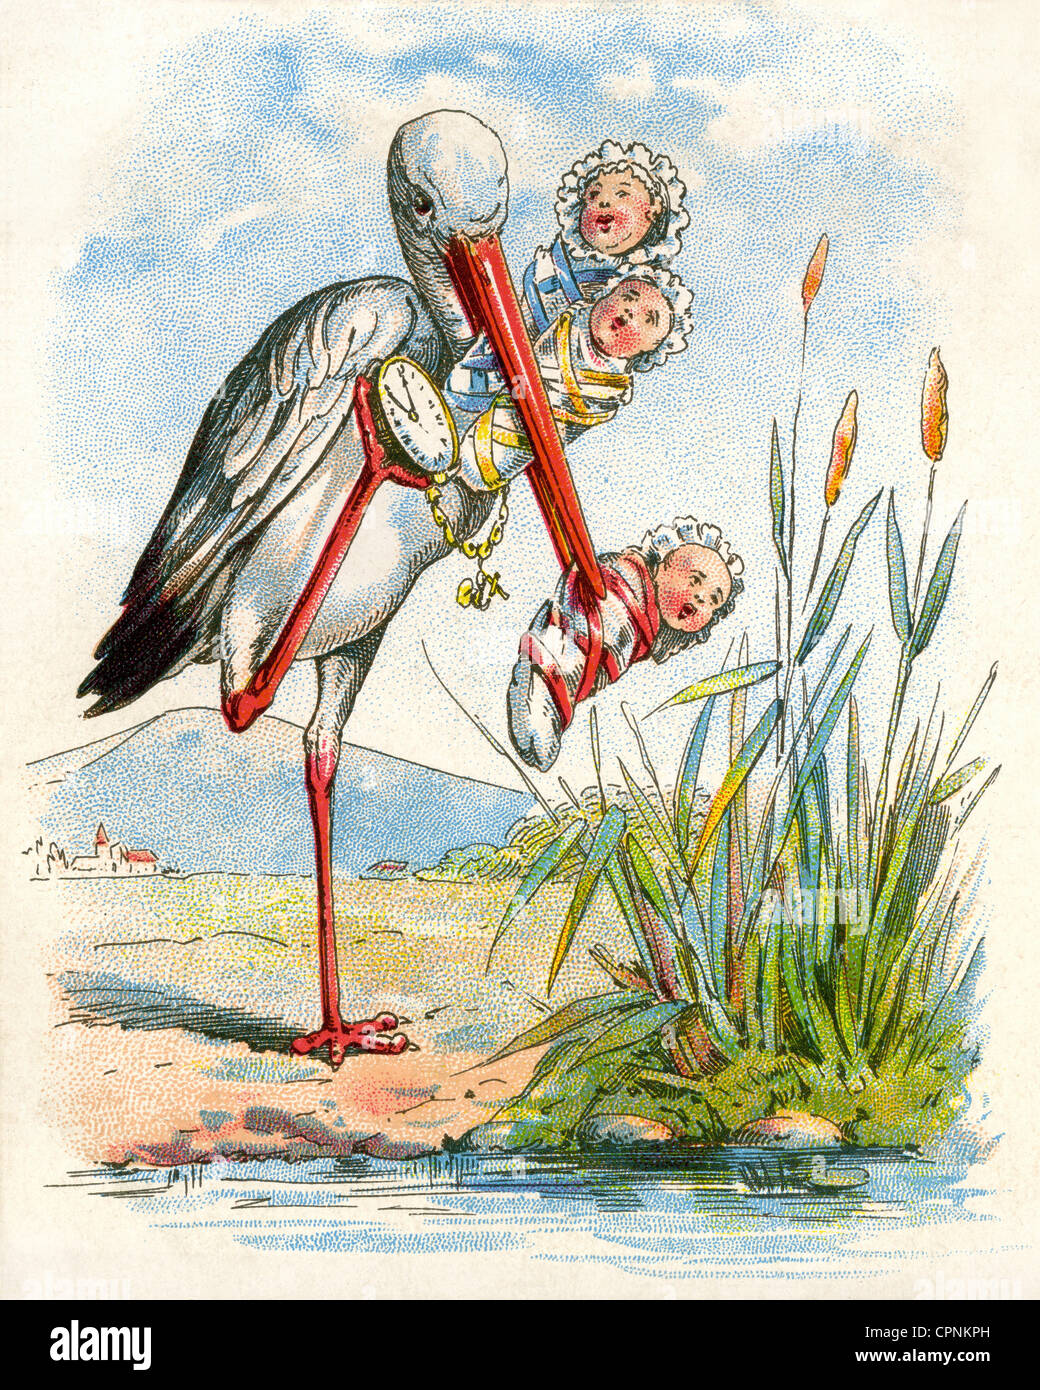 Kitsch/Karten/Souvenir, Storch bringt Babys, zeigt ihnen die Zeit, der Begriff ist nahe, legt sie ins Schilf, Deutschland, um 1903, Zusatzrechte-Clearences-nicht vorhanden Stockfoto